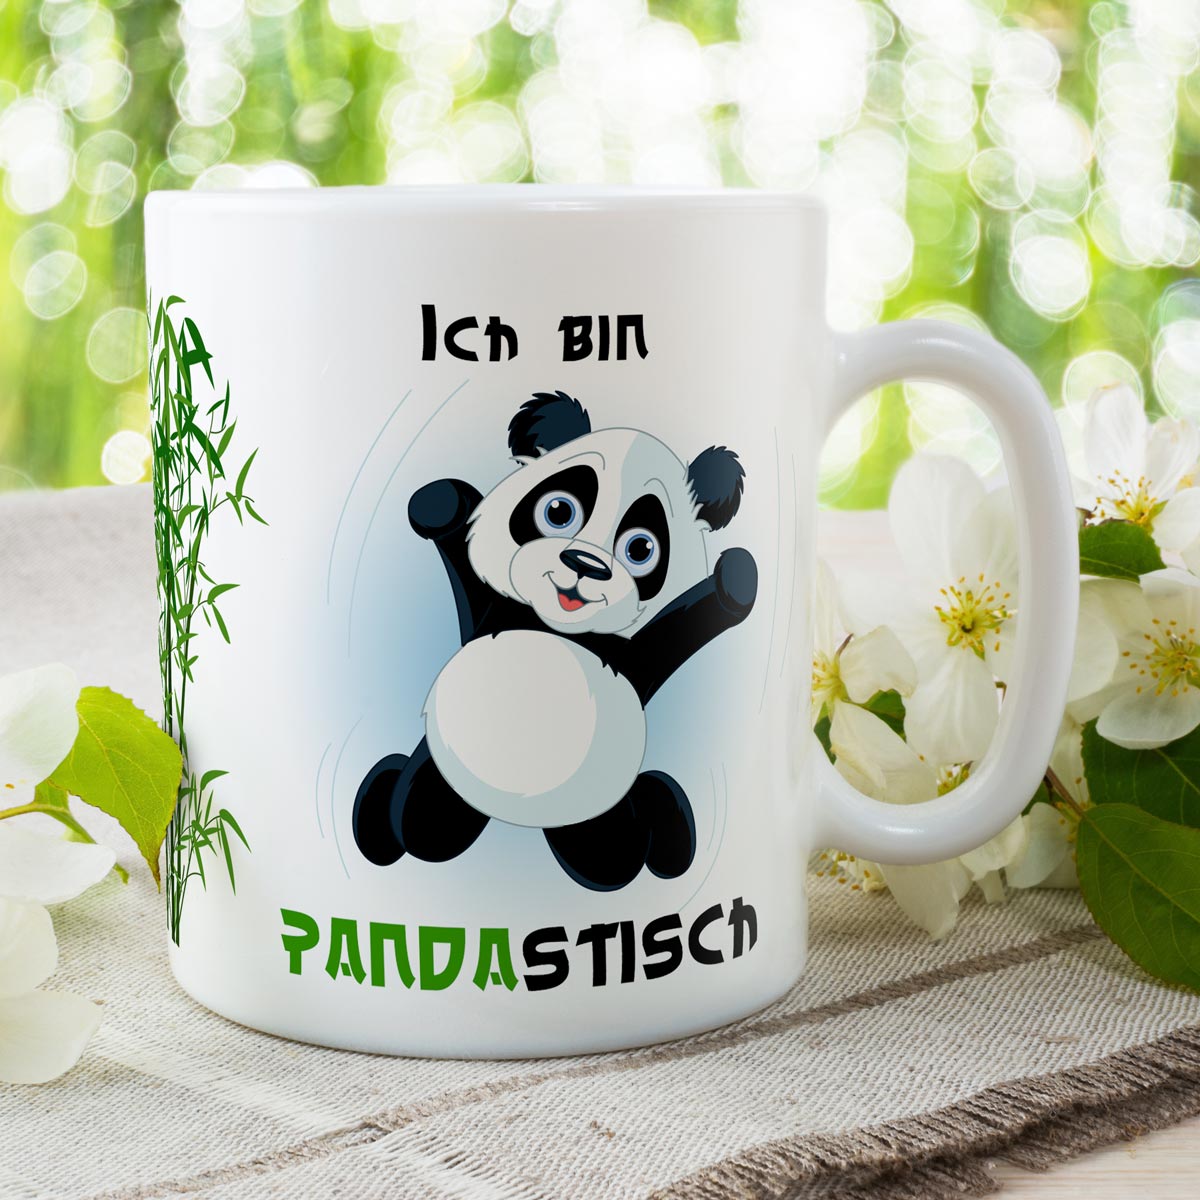 Trendation - Lustige Panda Tasse Panda-Motiv Geschenk Tierliebhaber  Geschenkidee